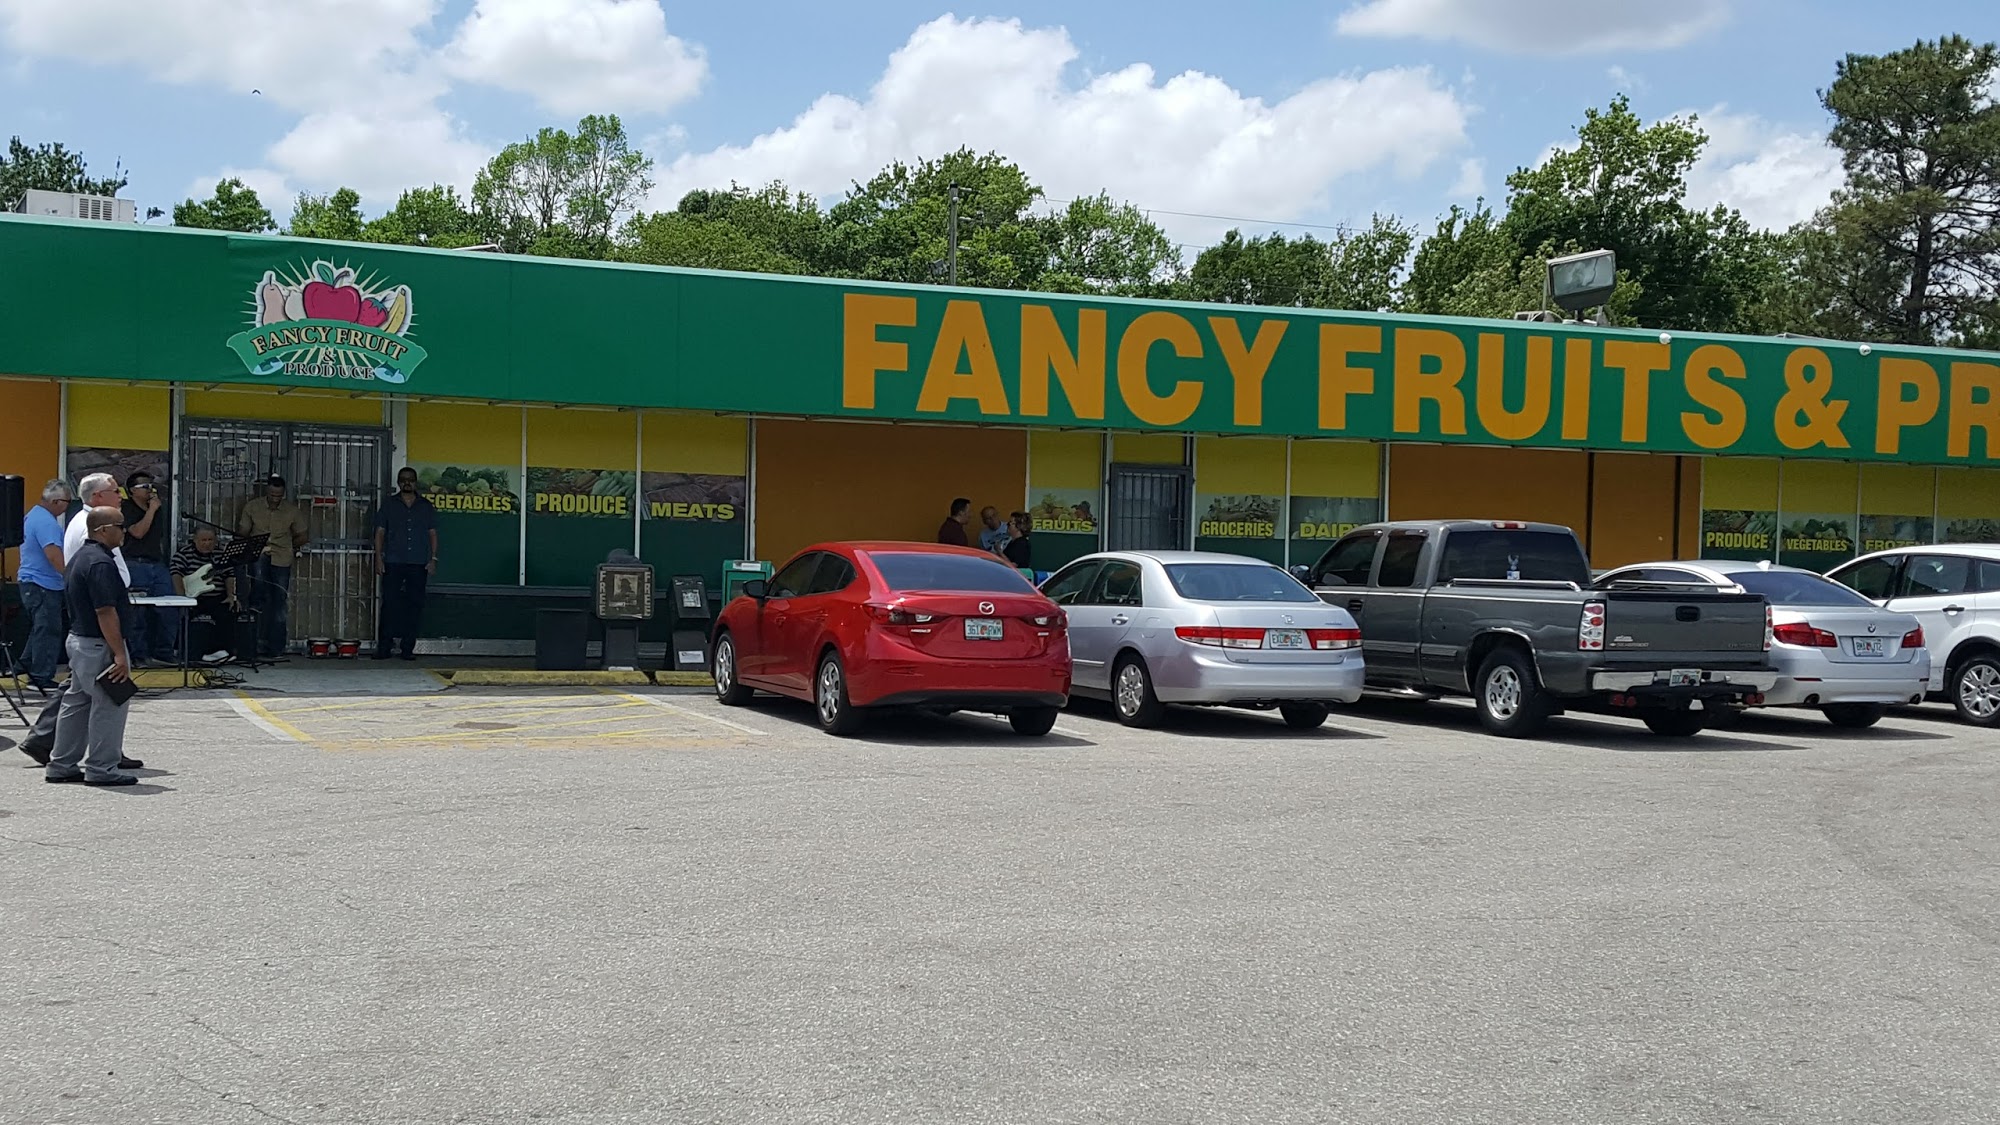 Fancy Fruits & Produce